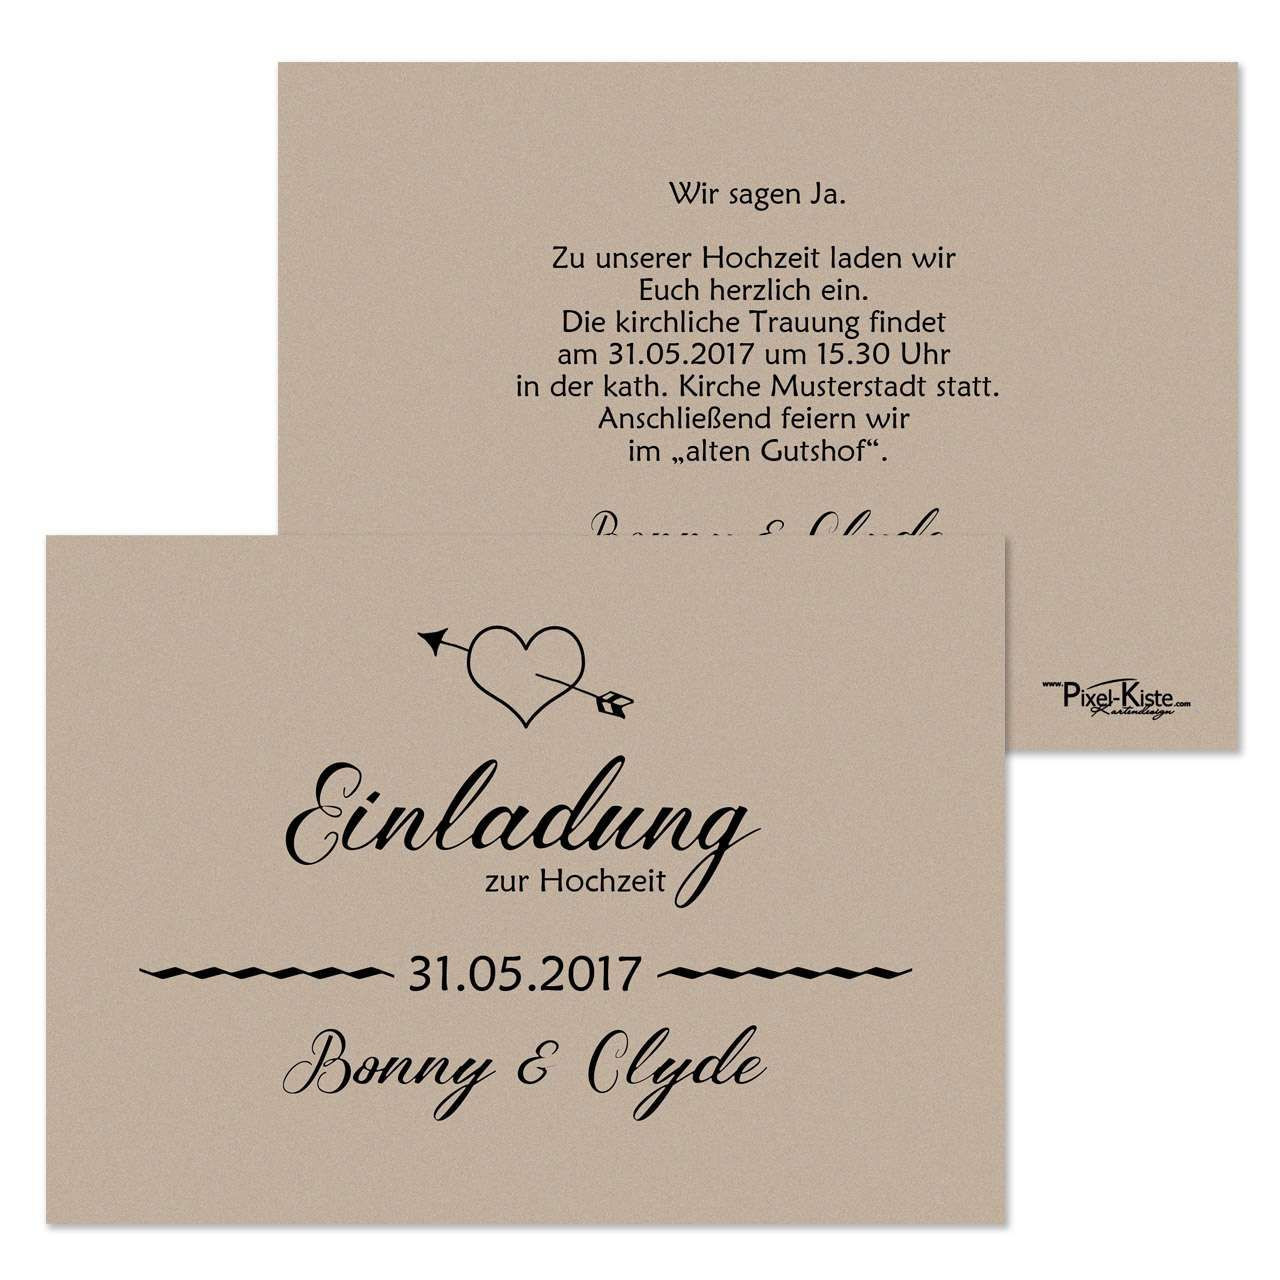 Einladungskarten Zur Hochzeit
 einladungskarten hochzeit einladungskarten zur hochzeit